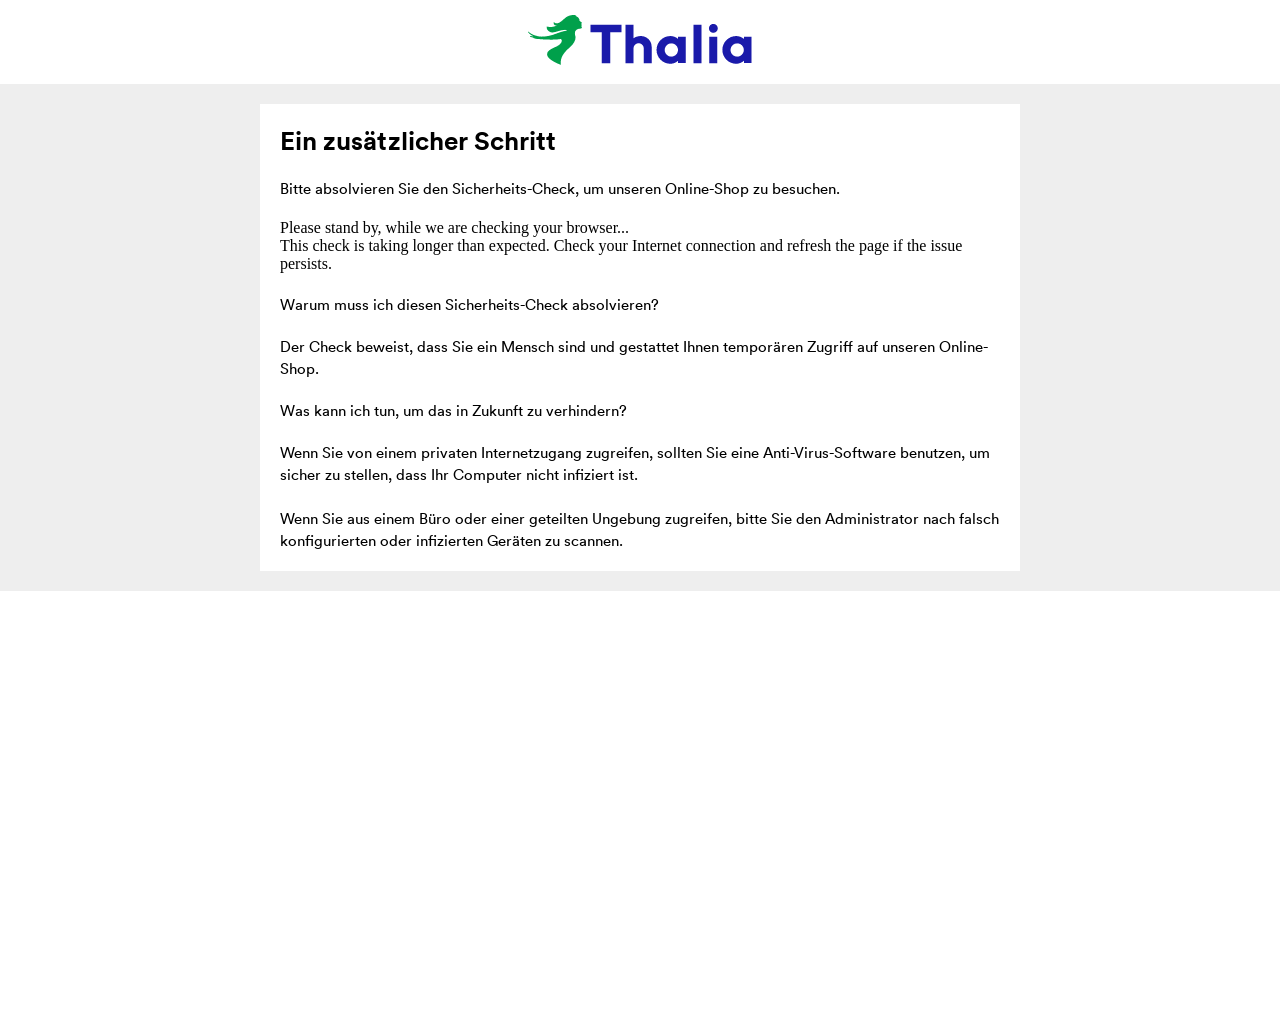 www.thalia.de